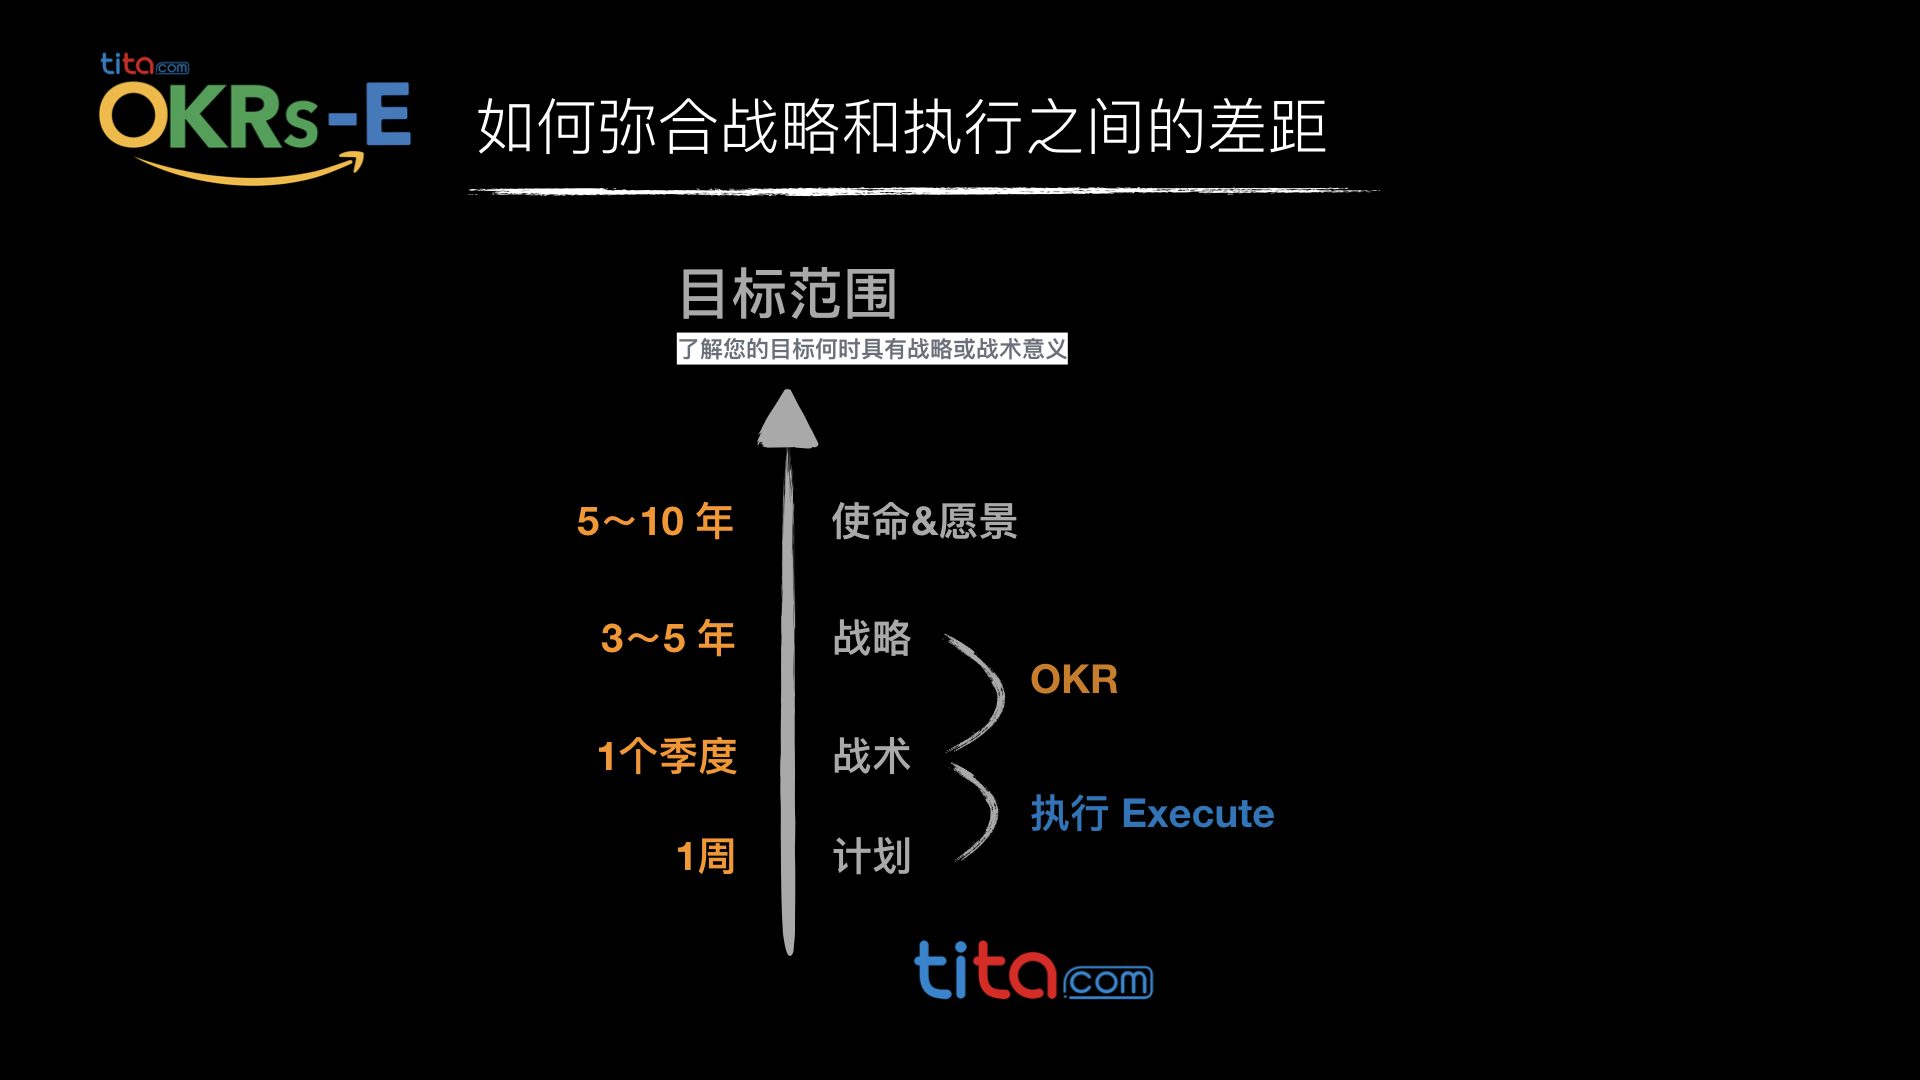 OKR目标管理 okr.tita.com